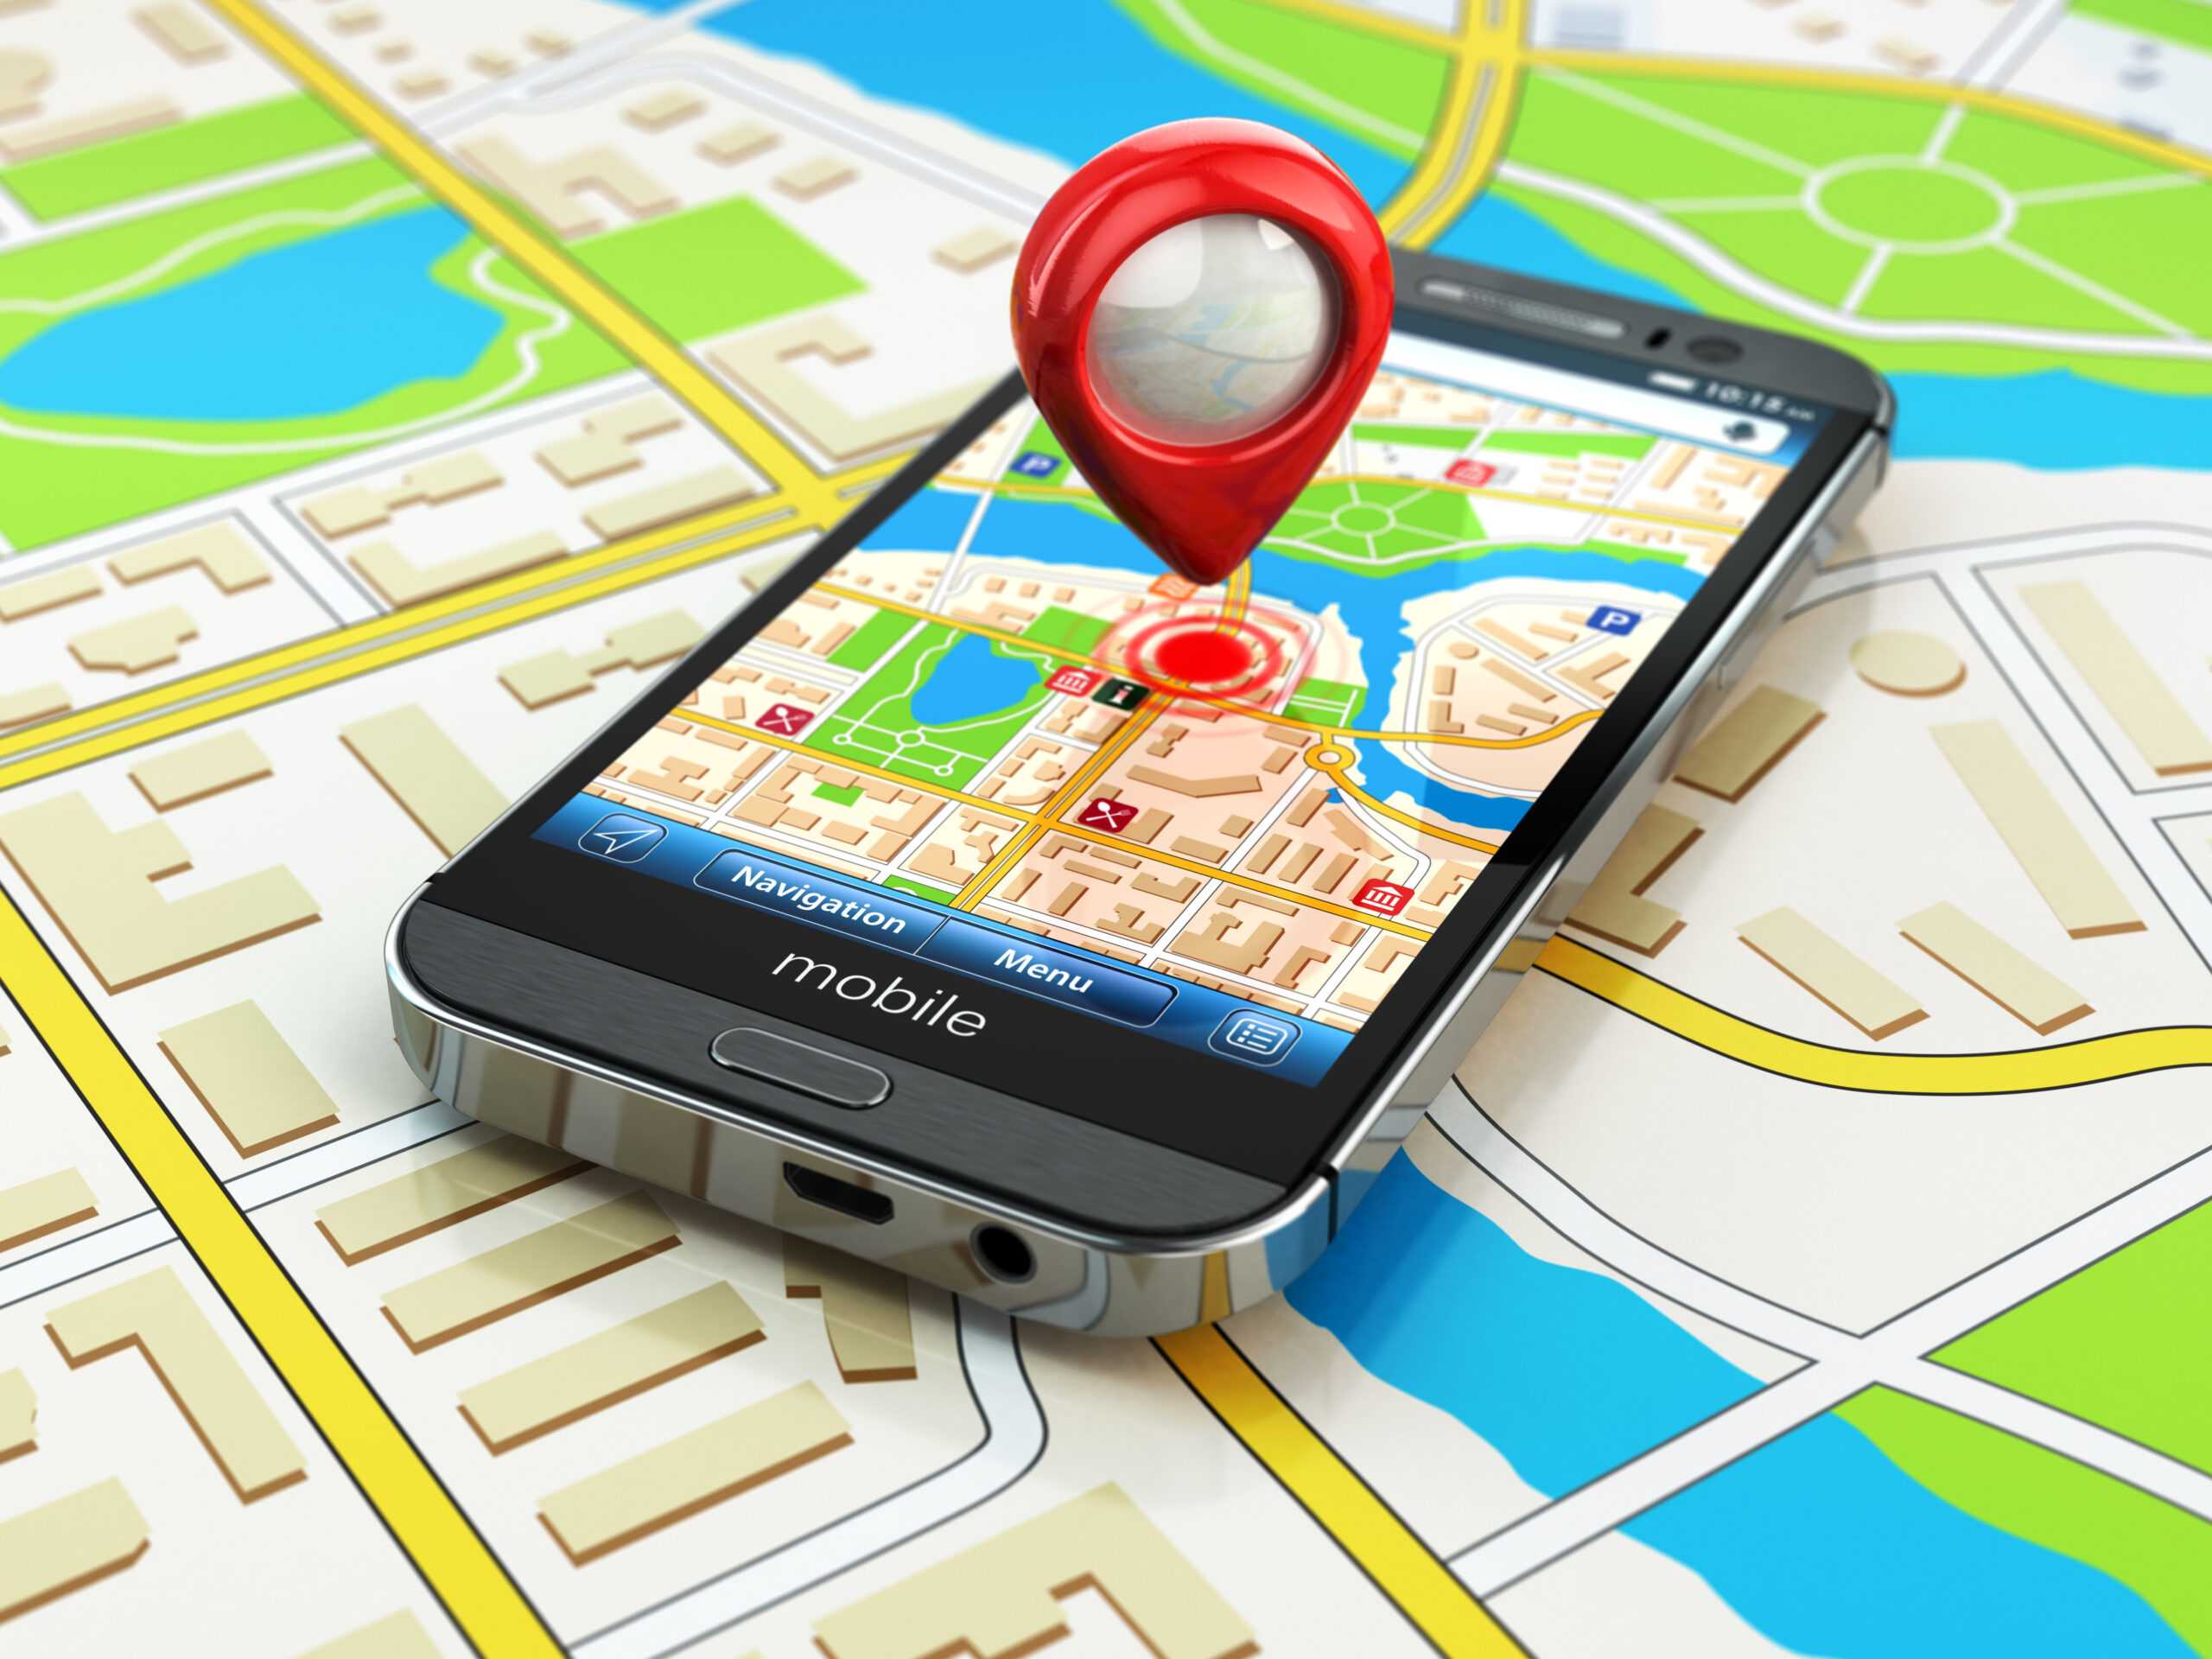 Отследить телефон по gps. Геолокация в смартфоне. Навигатор на смартфоне. Геолокационные сервисы. GPS.